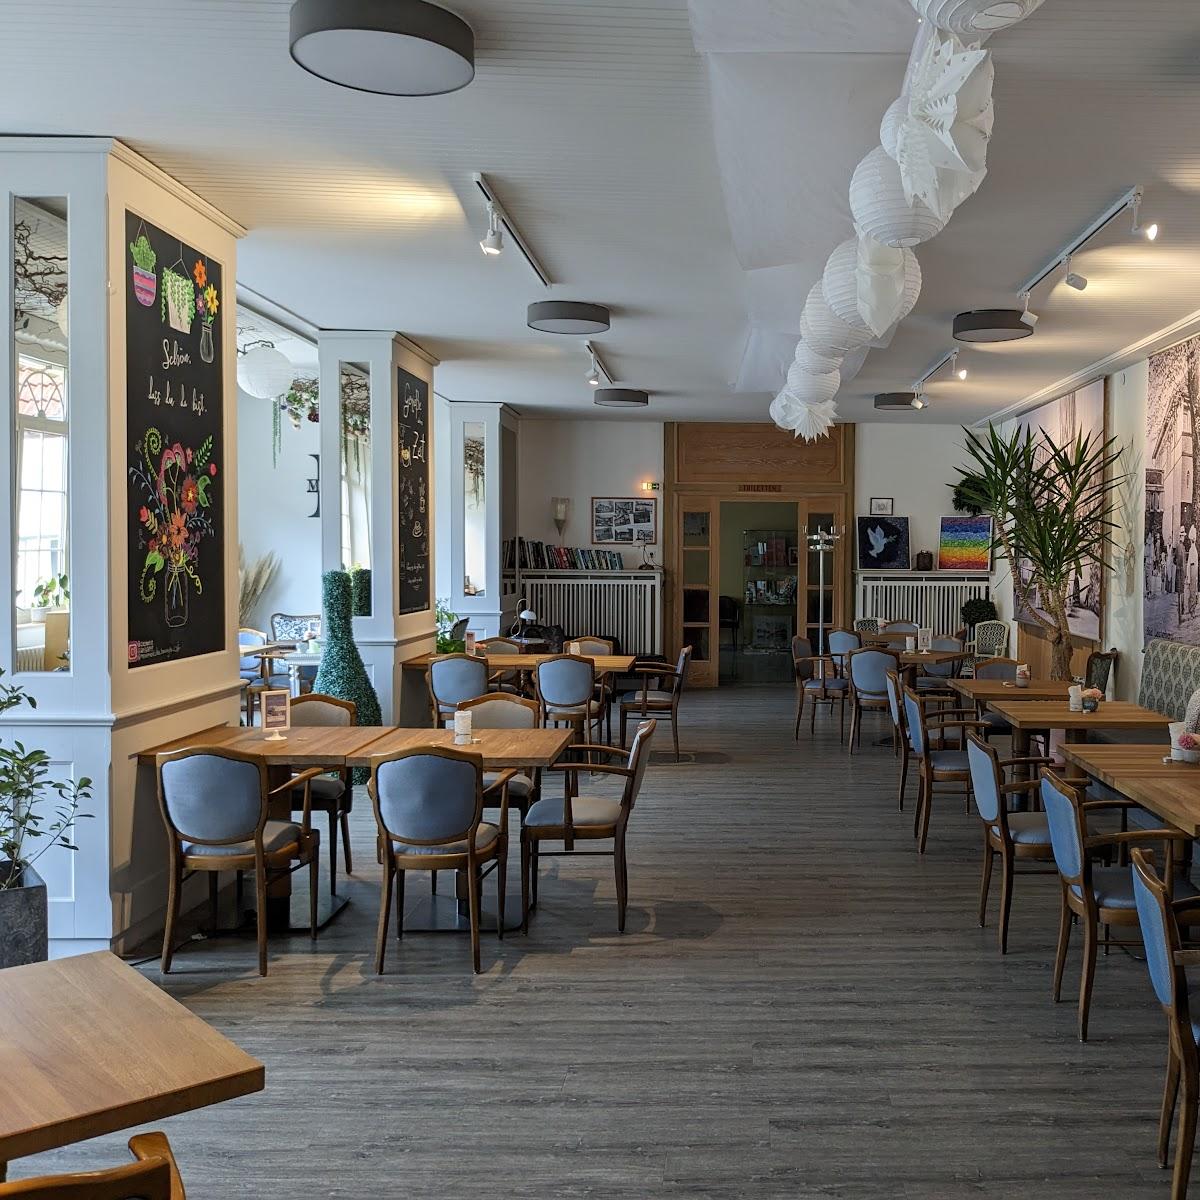 Restaurant "MOVEMENT Das bewegte Restaurant & Café I Functional Area I Veranstaltungshaus" in Bad Lauterberg im Harz